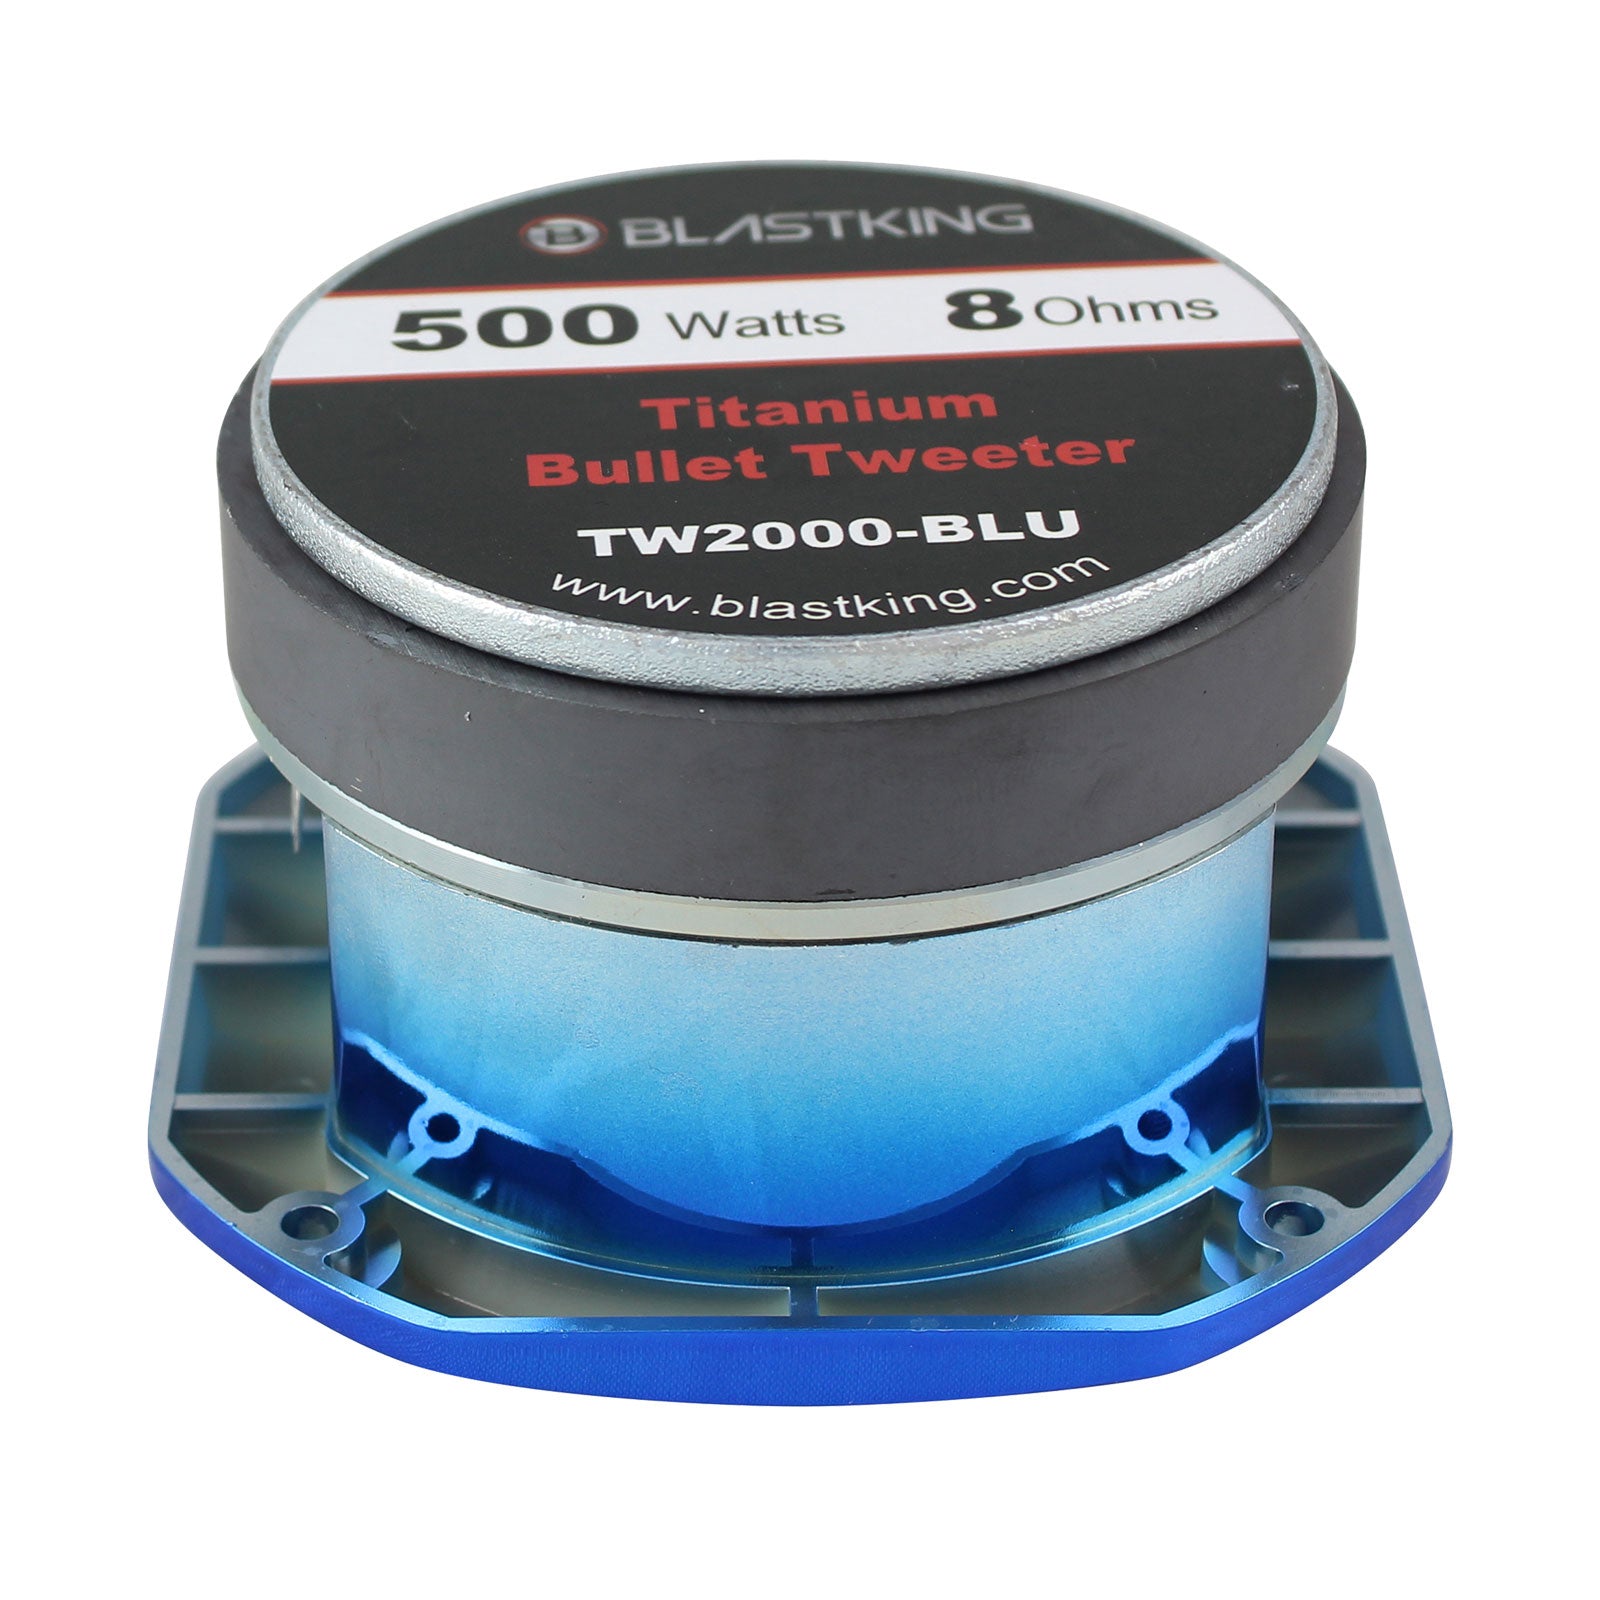 Blastking TW2000-BLU-K2 (2) 500 Watts 4x4 inch 1.5 inch VC Titanium Bullet Tweeter Blue